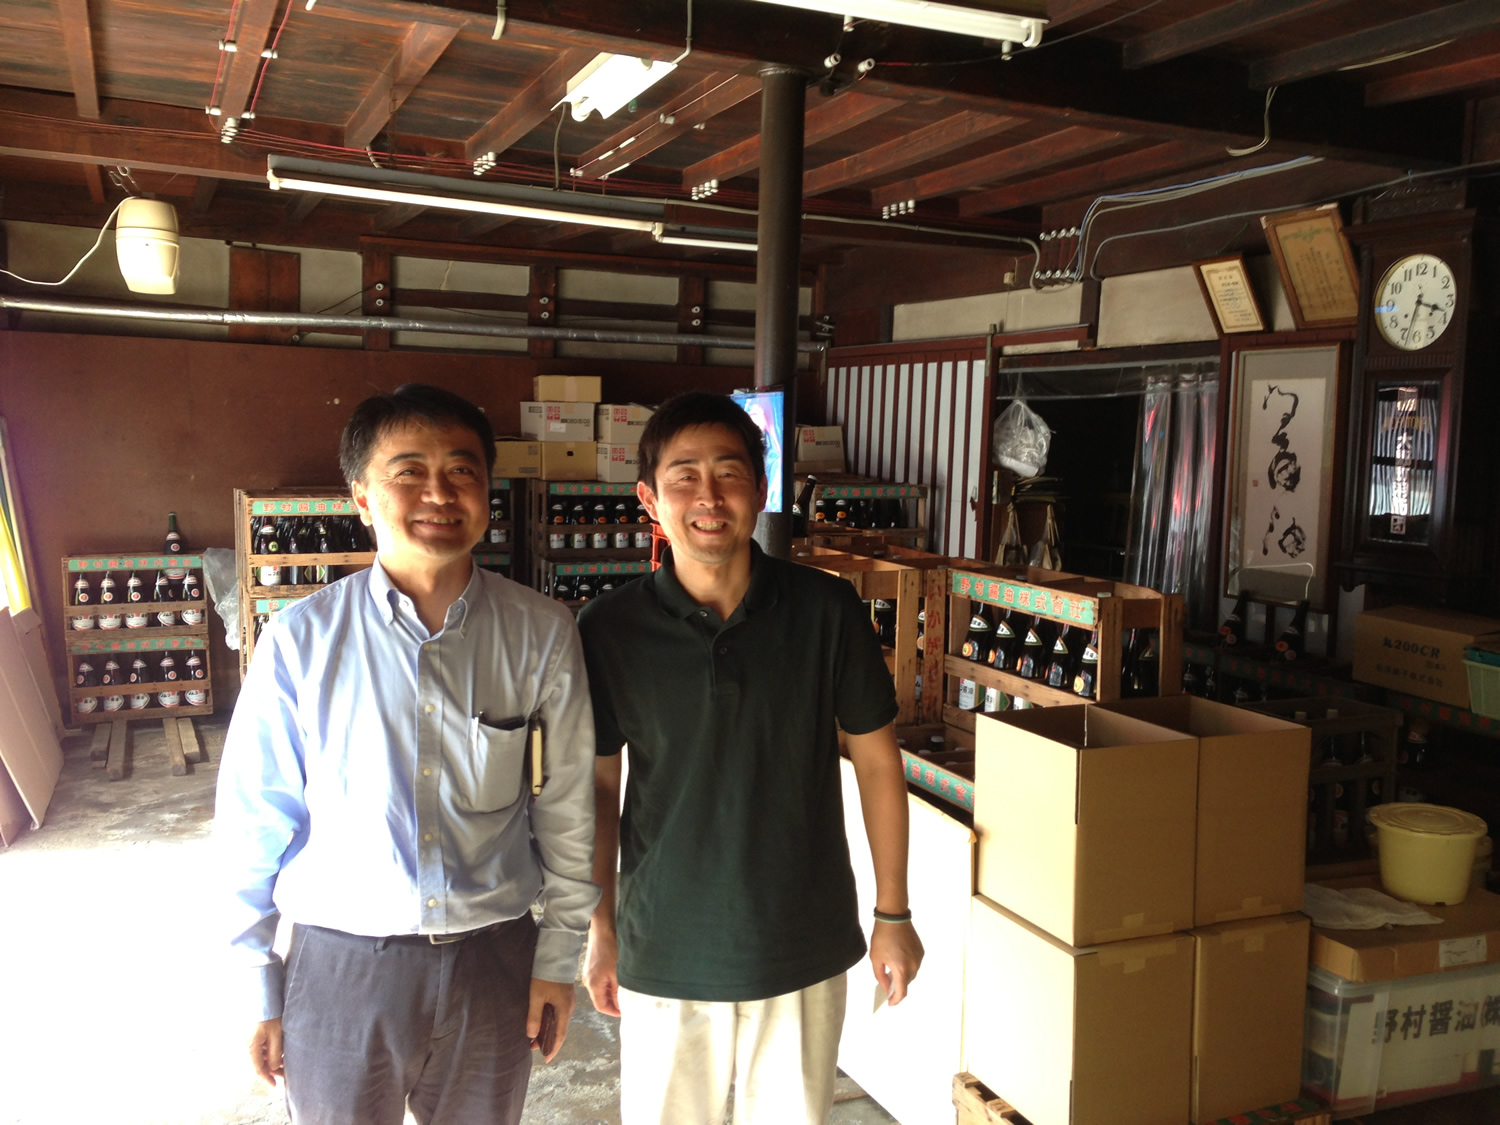 福井有数のそば産地である越前大野で100年以上、麹づくりから一貫して醤油醸造を続ける野村醤油様を見学しました。